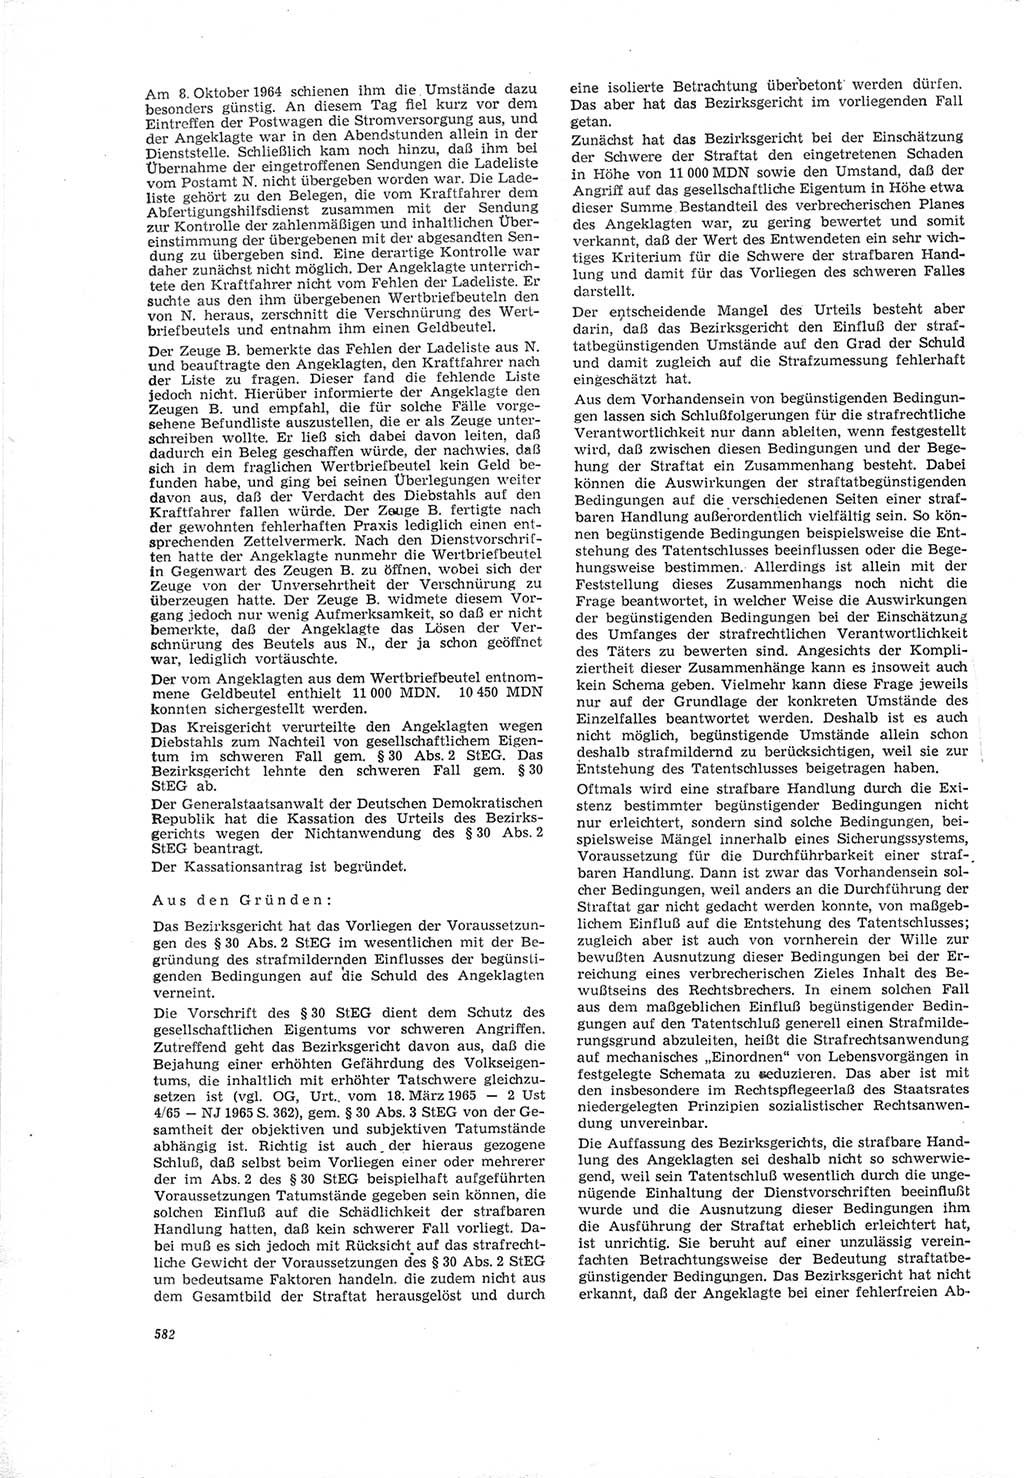 Neue Justiz (NJ), Zeitschrift für Recht und Rechtswissenschaft [Deutsche Demokratische Republik (DDR)], 19. Jahrgang 1965, Seite 582 (NJ DDR 1965, S. 582)